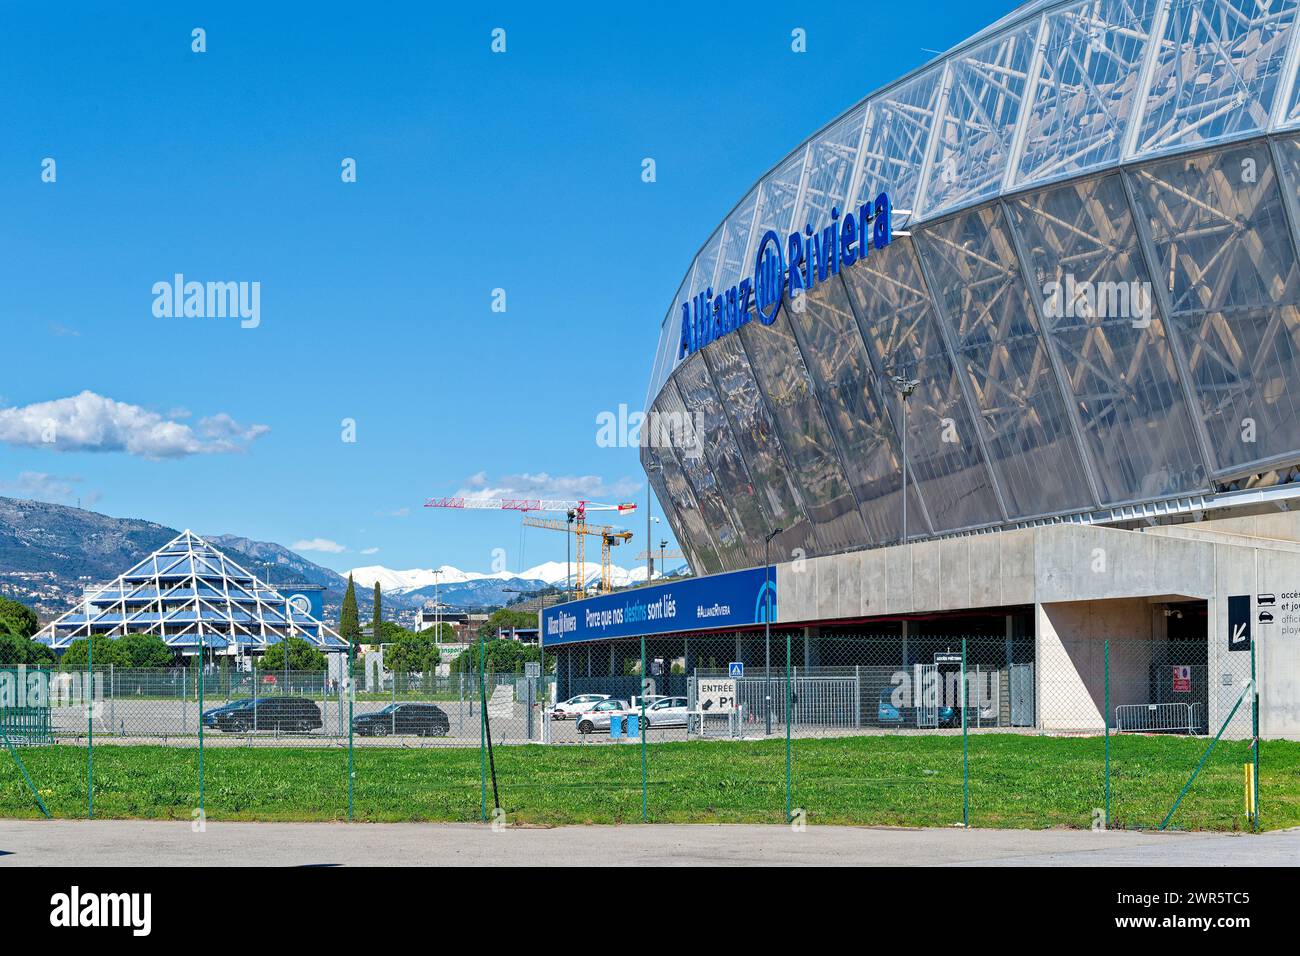 Multifunktionsarena Allianz Rivera in Nizza im Departement Var (Südostfrankreich). Nizza ist Austragungsort der Olympischen Fußballwettbewerbe 2024 Stockfoto